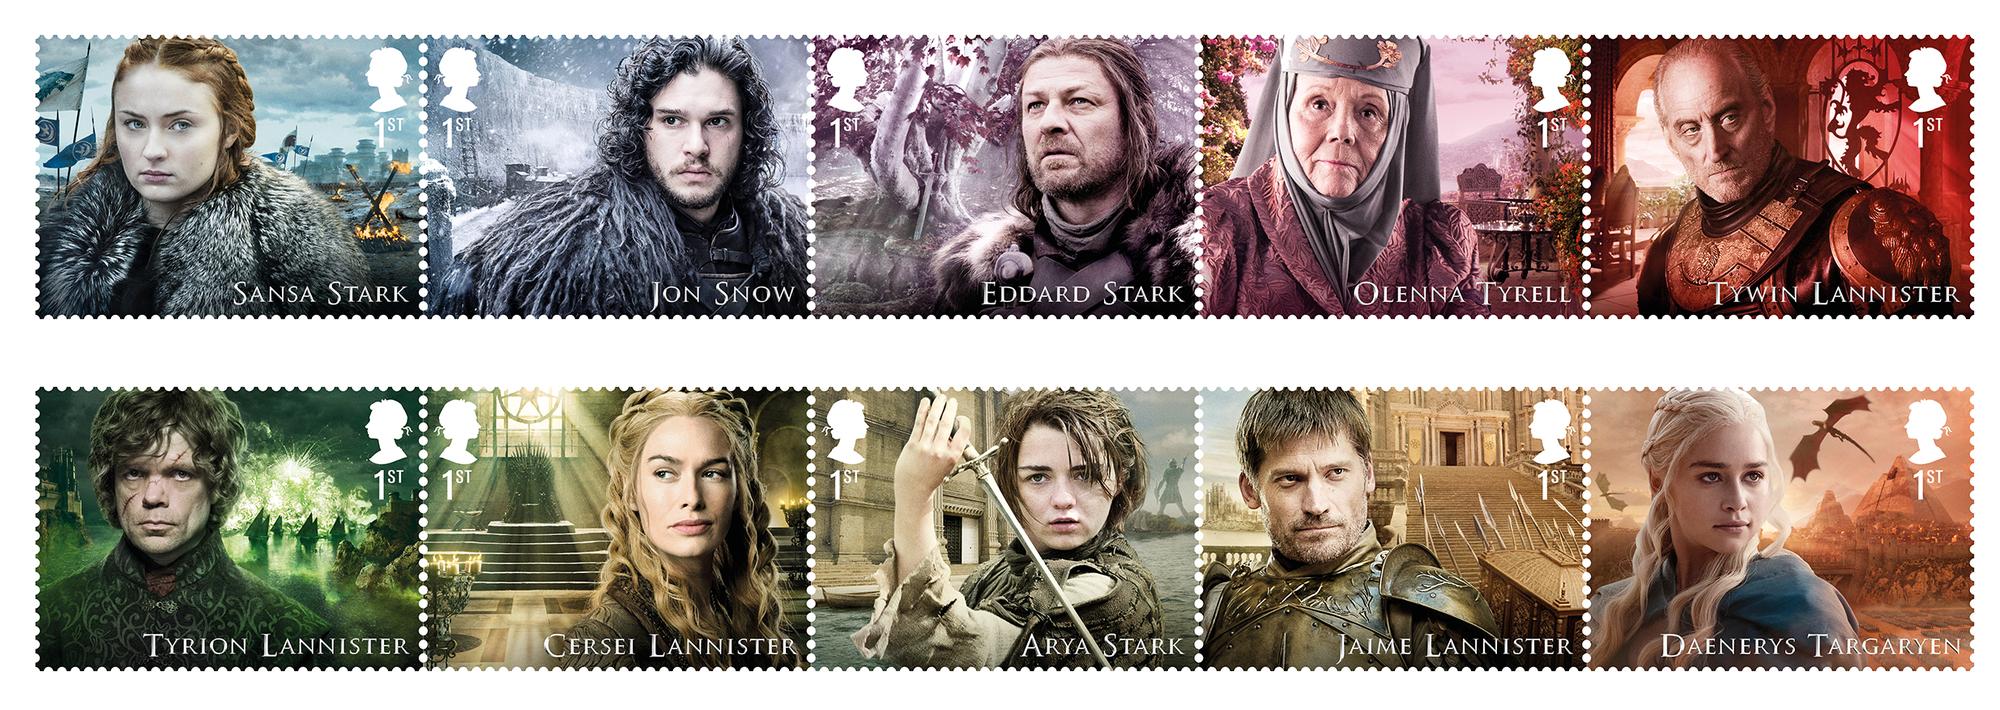 Une photographie fournie le 4 janvier 2018 par le Royal Mail montre une série de timbres à l'effigie de personnages de la série HBO "Game of Thrones". [ROYAL MAIL/HBO/AFP - HANDOUT]